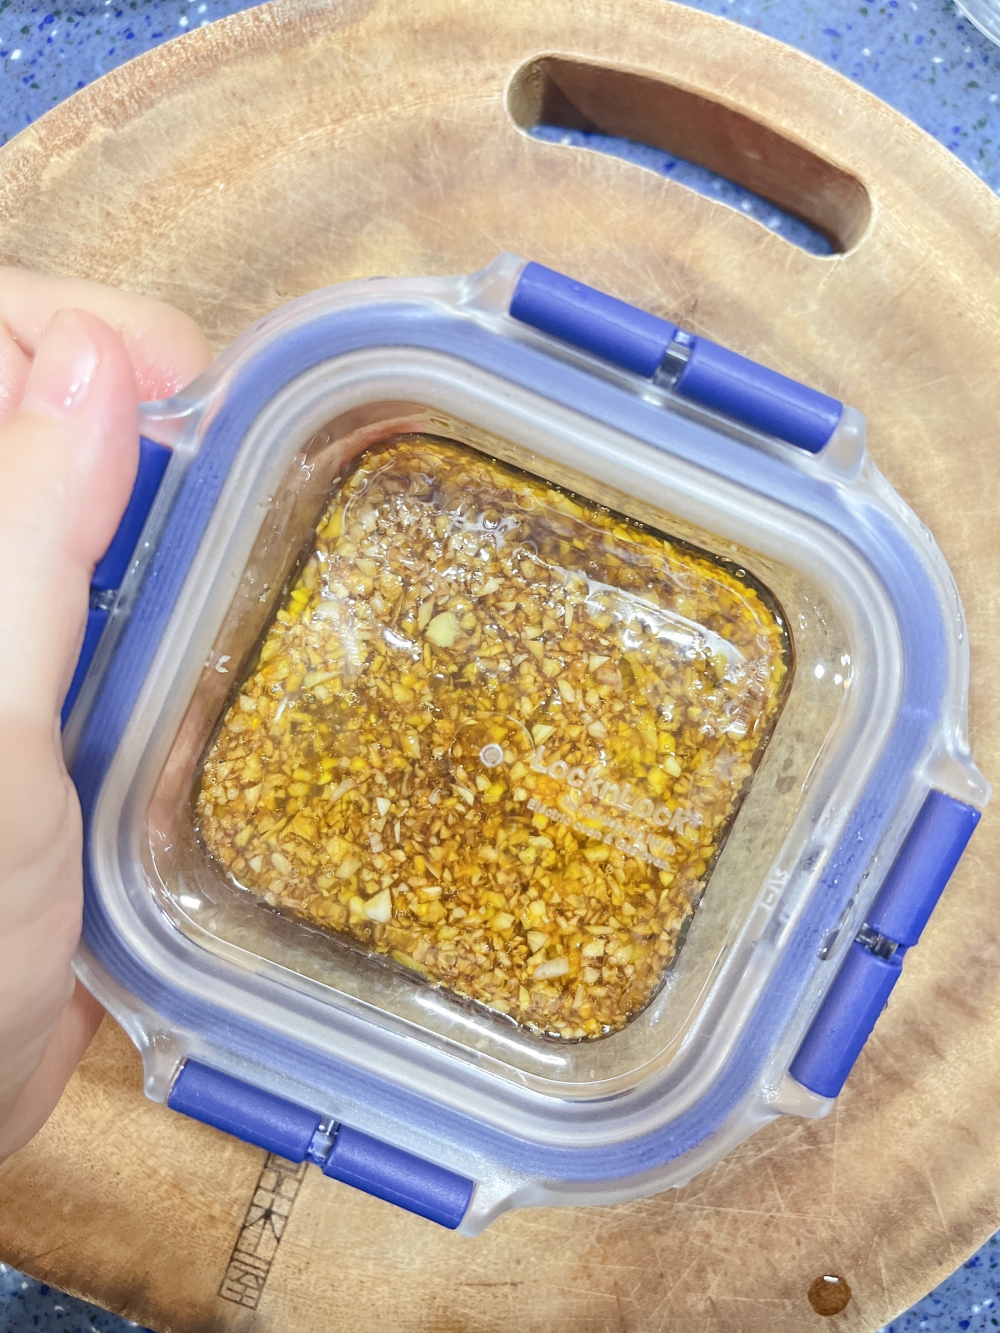 蒜泥醬油用樂扣樂扣玻璃保鮮盒裝